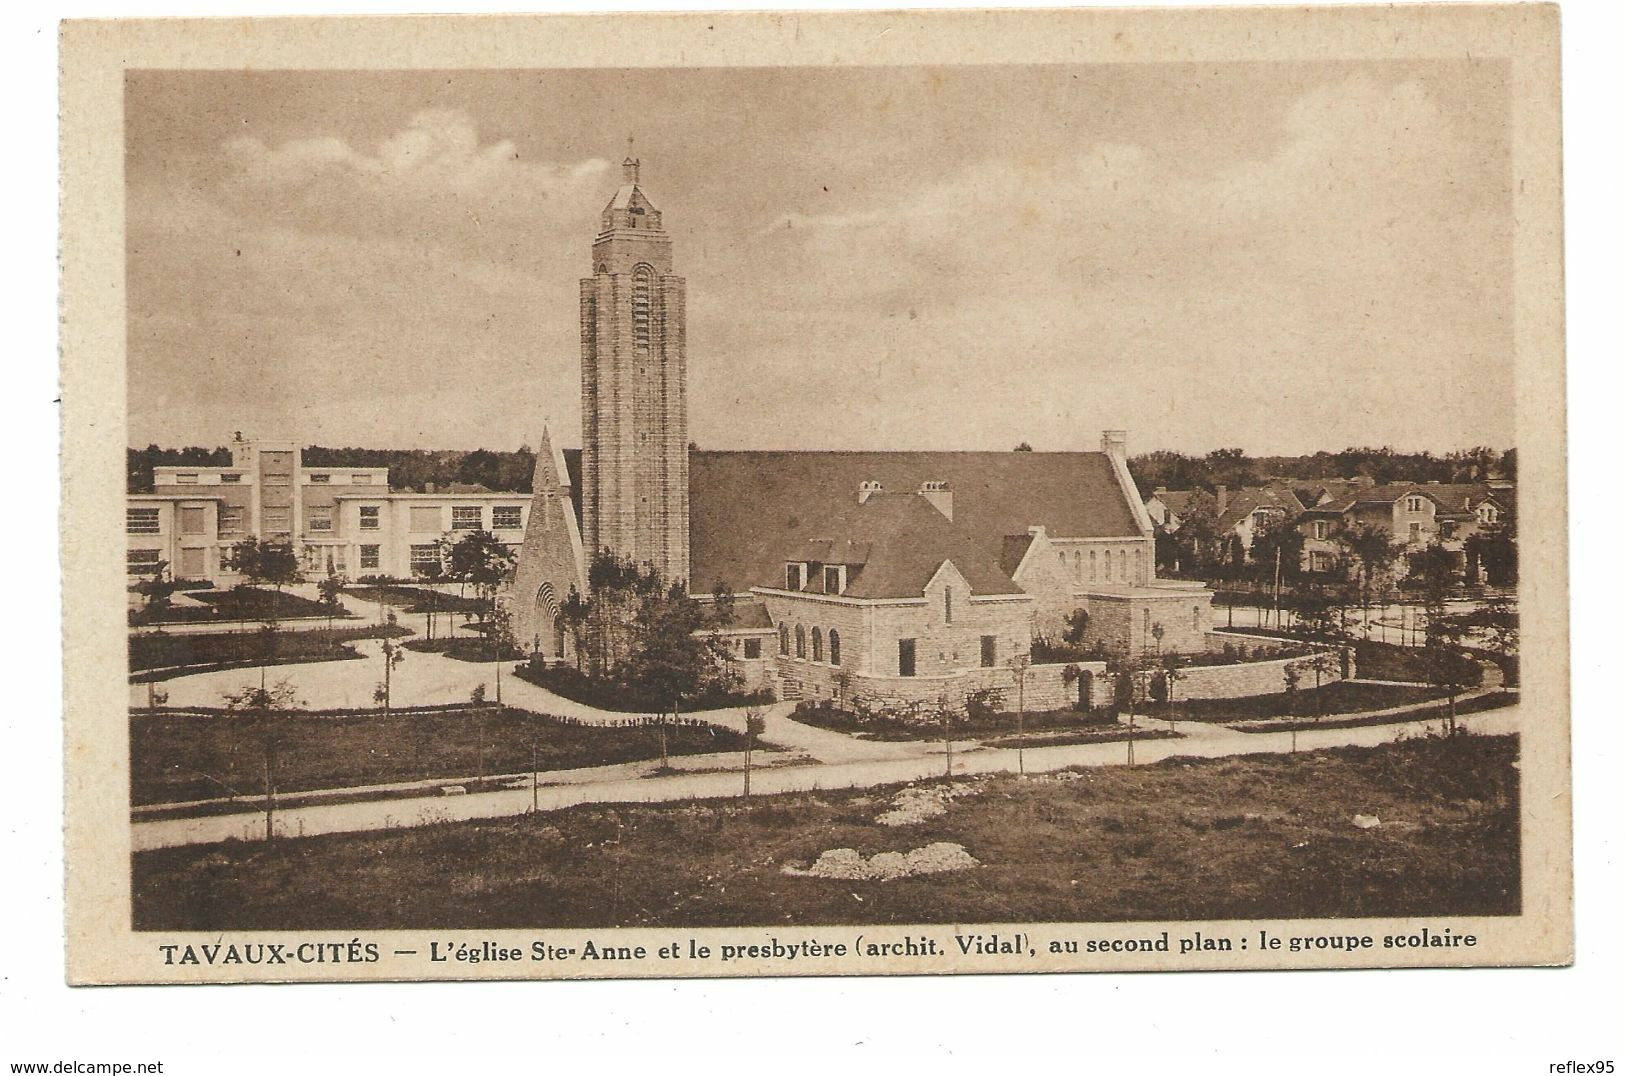 TAVAUX CITE - L'Eglise Sainte Anne Et Le Presbytère - Au Second Plan Le Groupe Scolaire - Tavaux